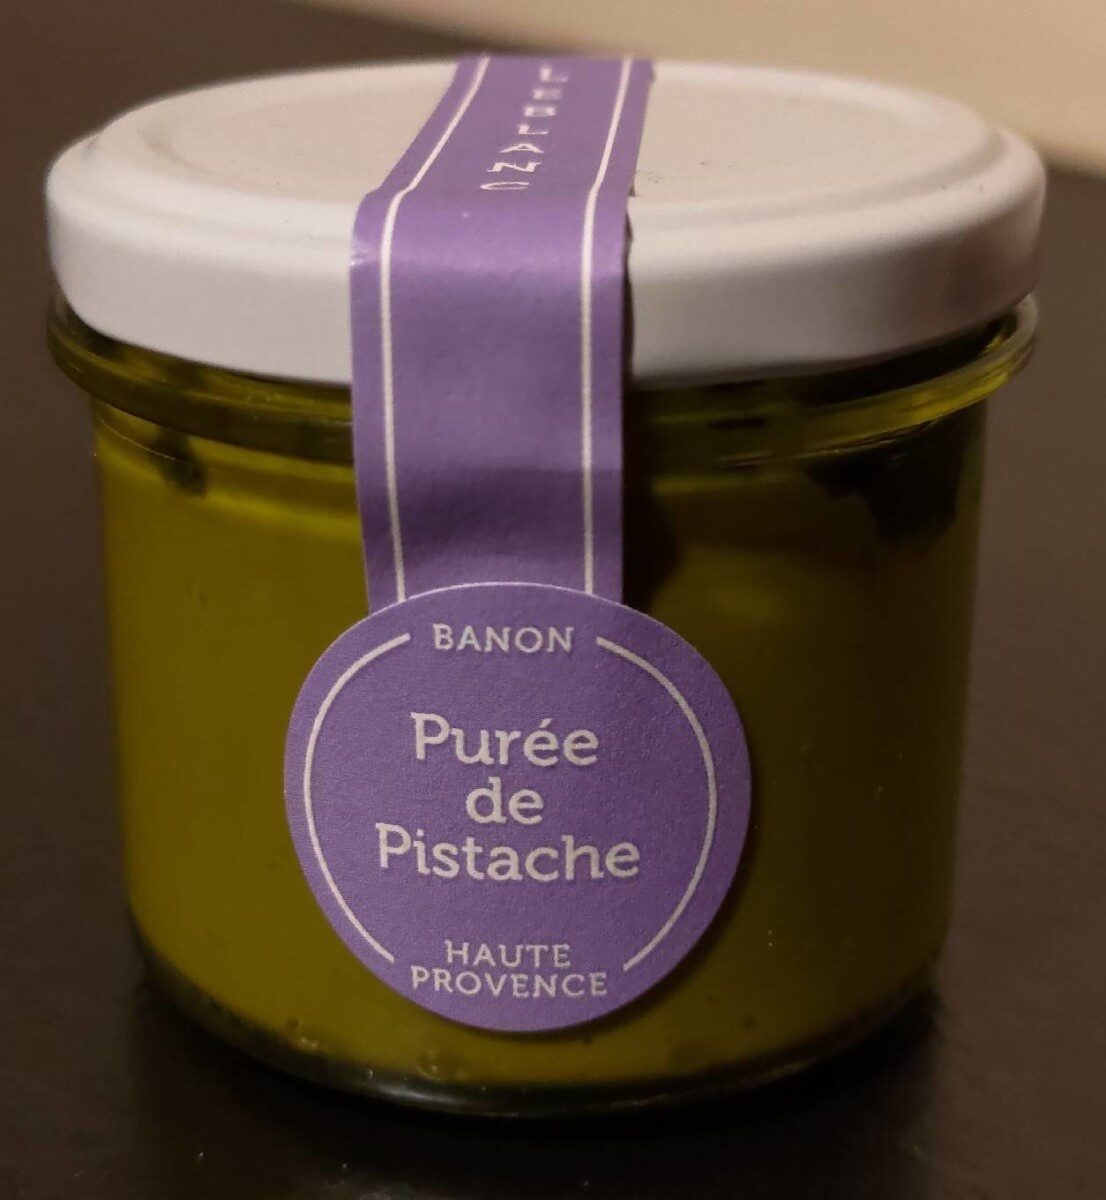 Purée de pistache - Product - fr